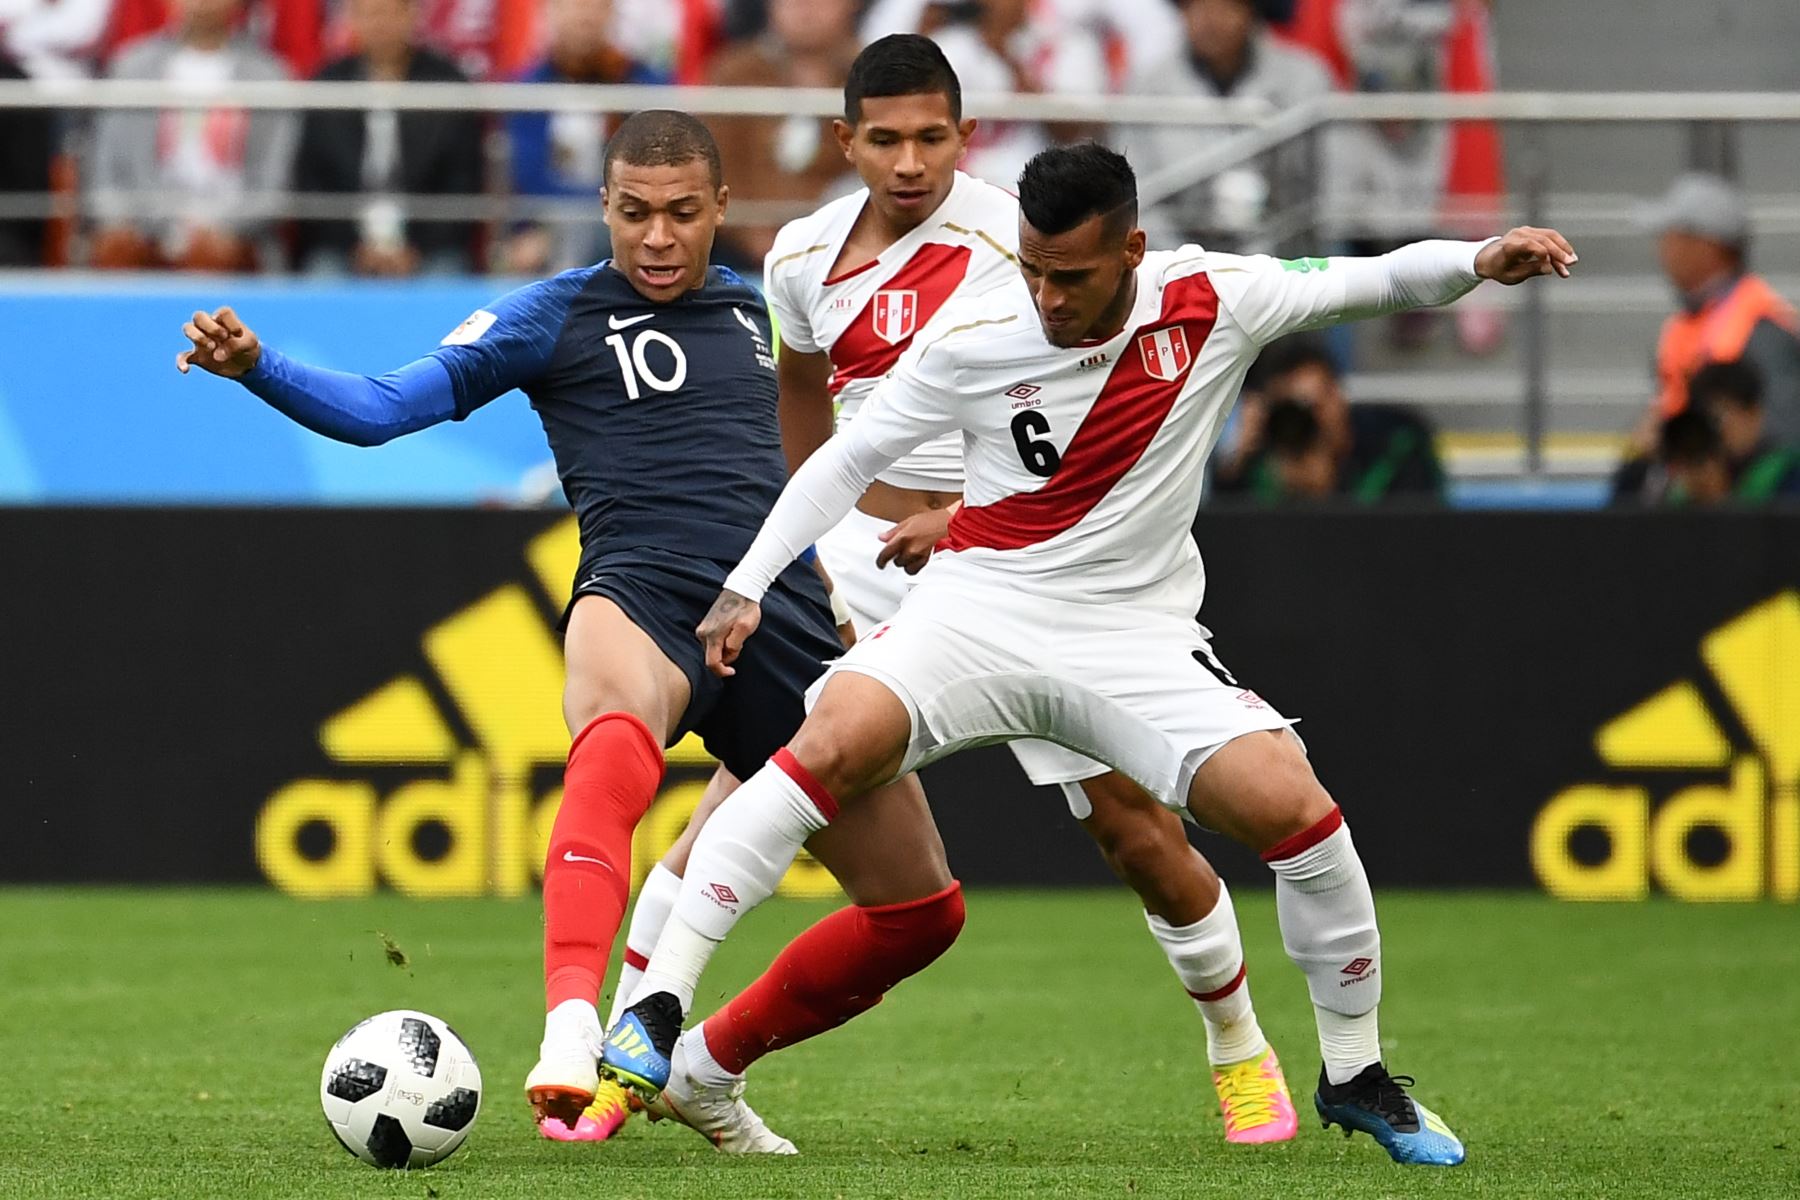 El alero de Francia Kylian Mbappe (L) compite por el balón con el defensor peruano Miguel Trauco (R) durante el partido de fútbol del Grupo C de la Copa Mundial Rusia 2018 entre Francia y Perú en el Ekaterimburgo Arena. / AFP